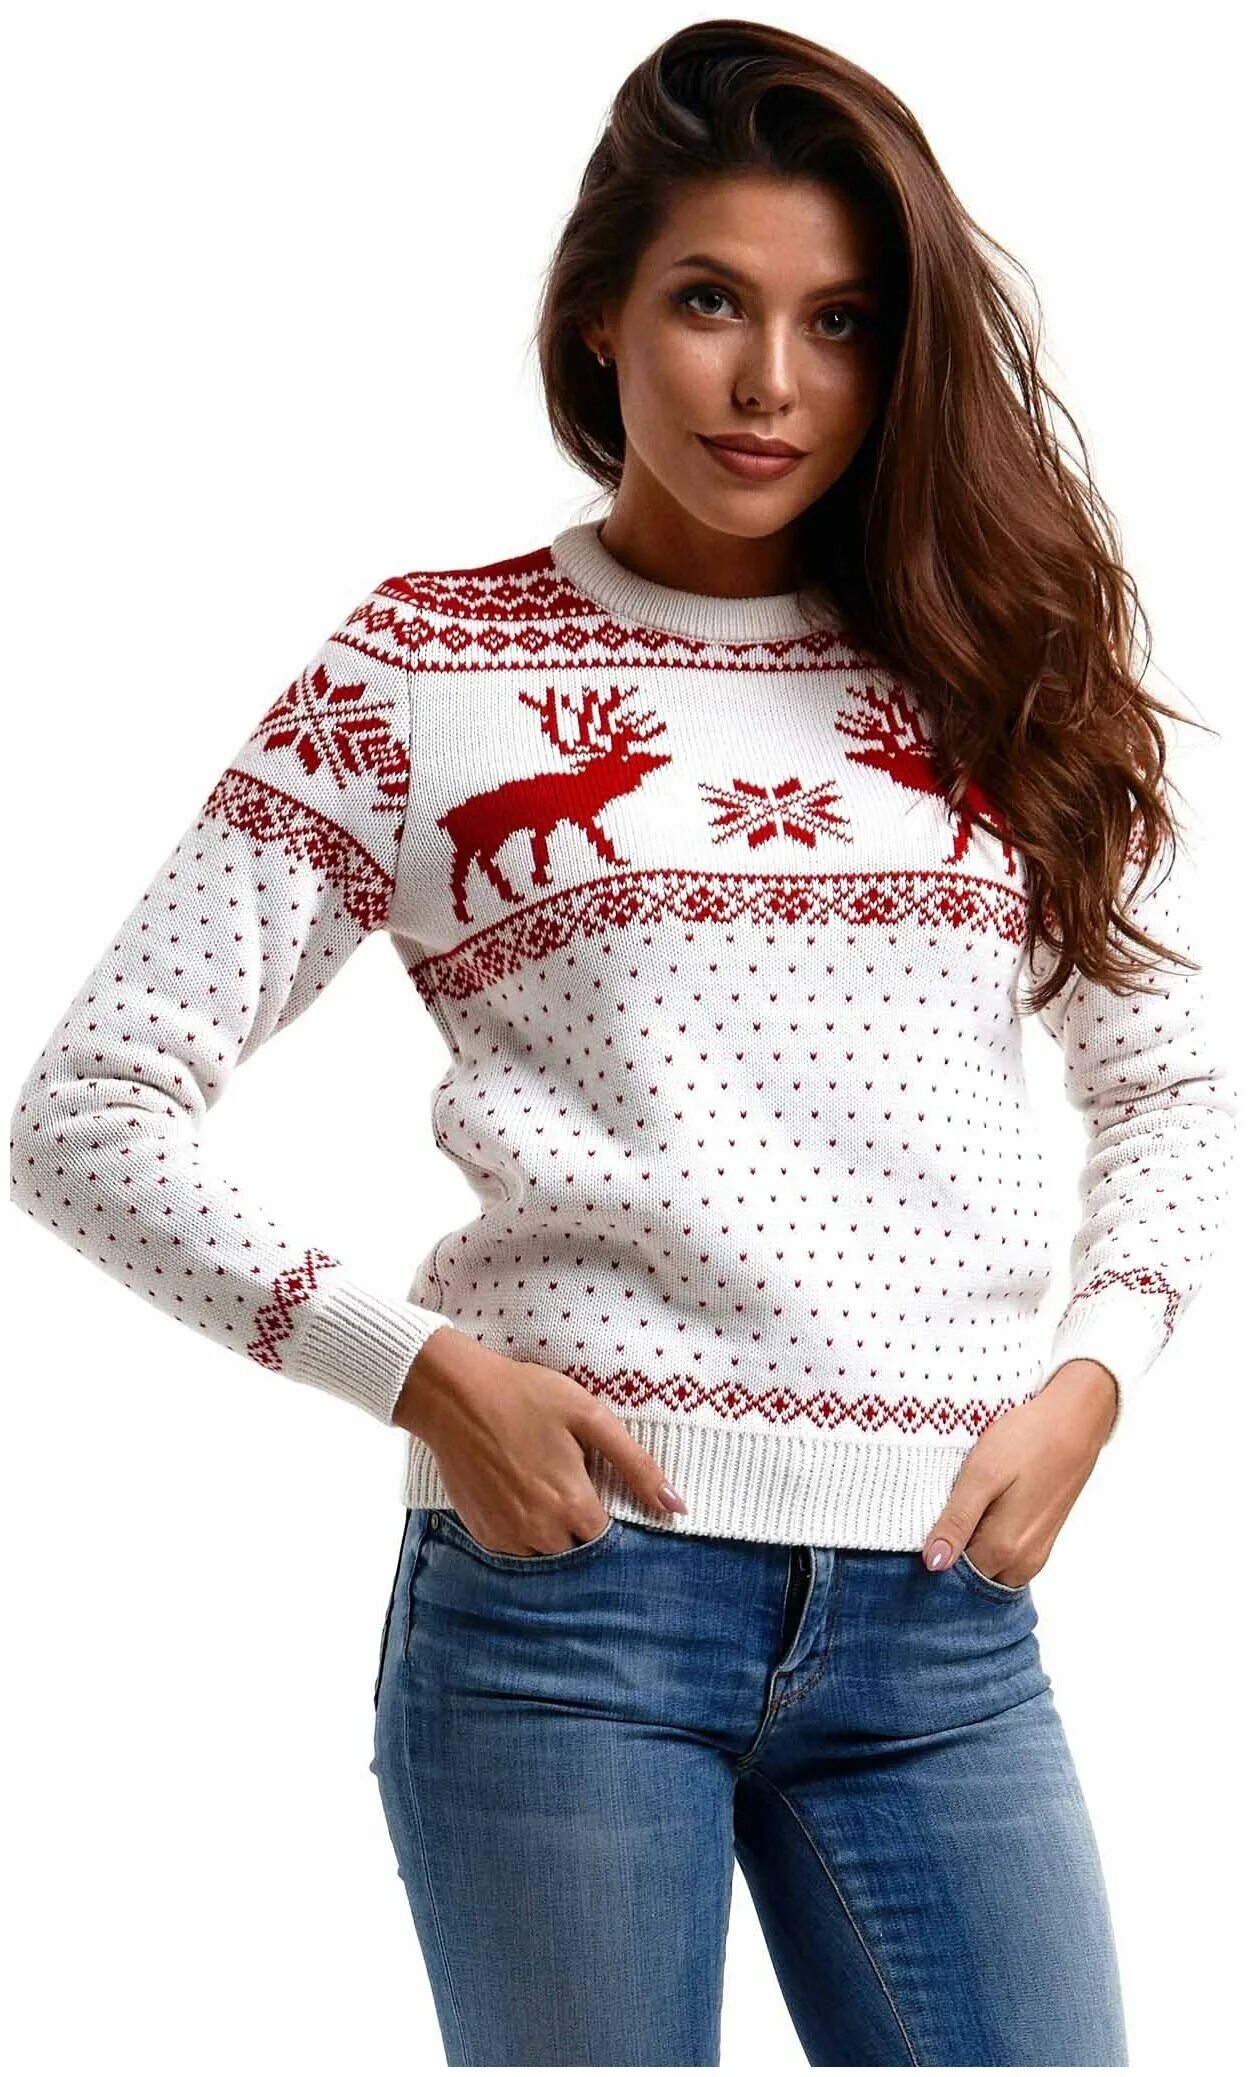 Где купить джемперы. Свитер с оленями женский. Новогодняя кофта женская. Новогодний свитер женский. Красный свитер с оленями женский.